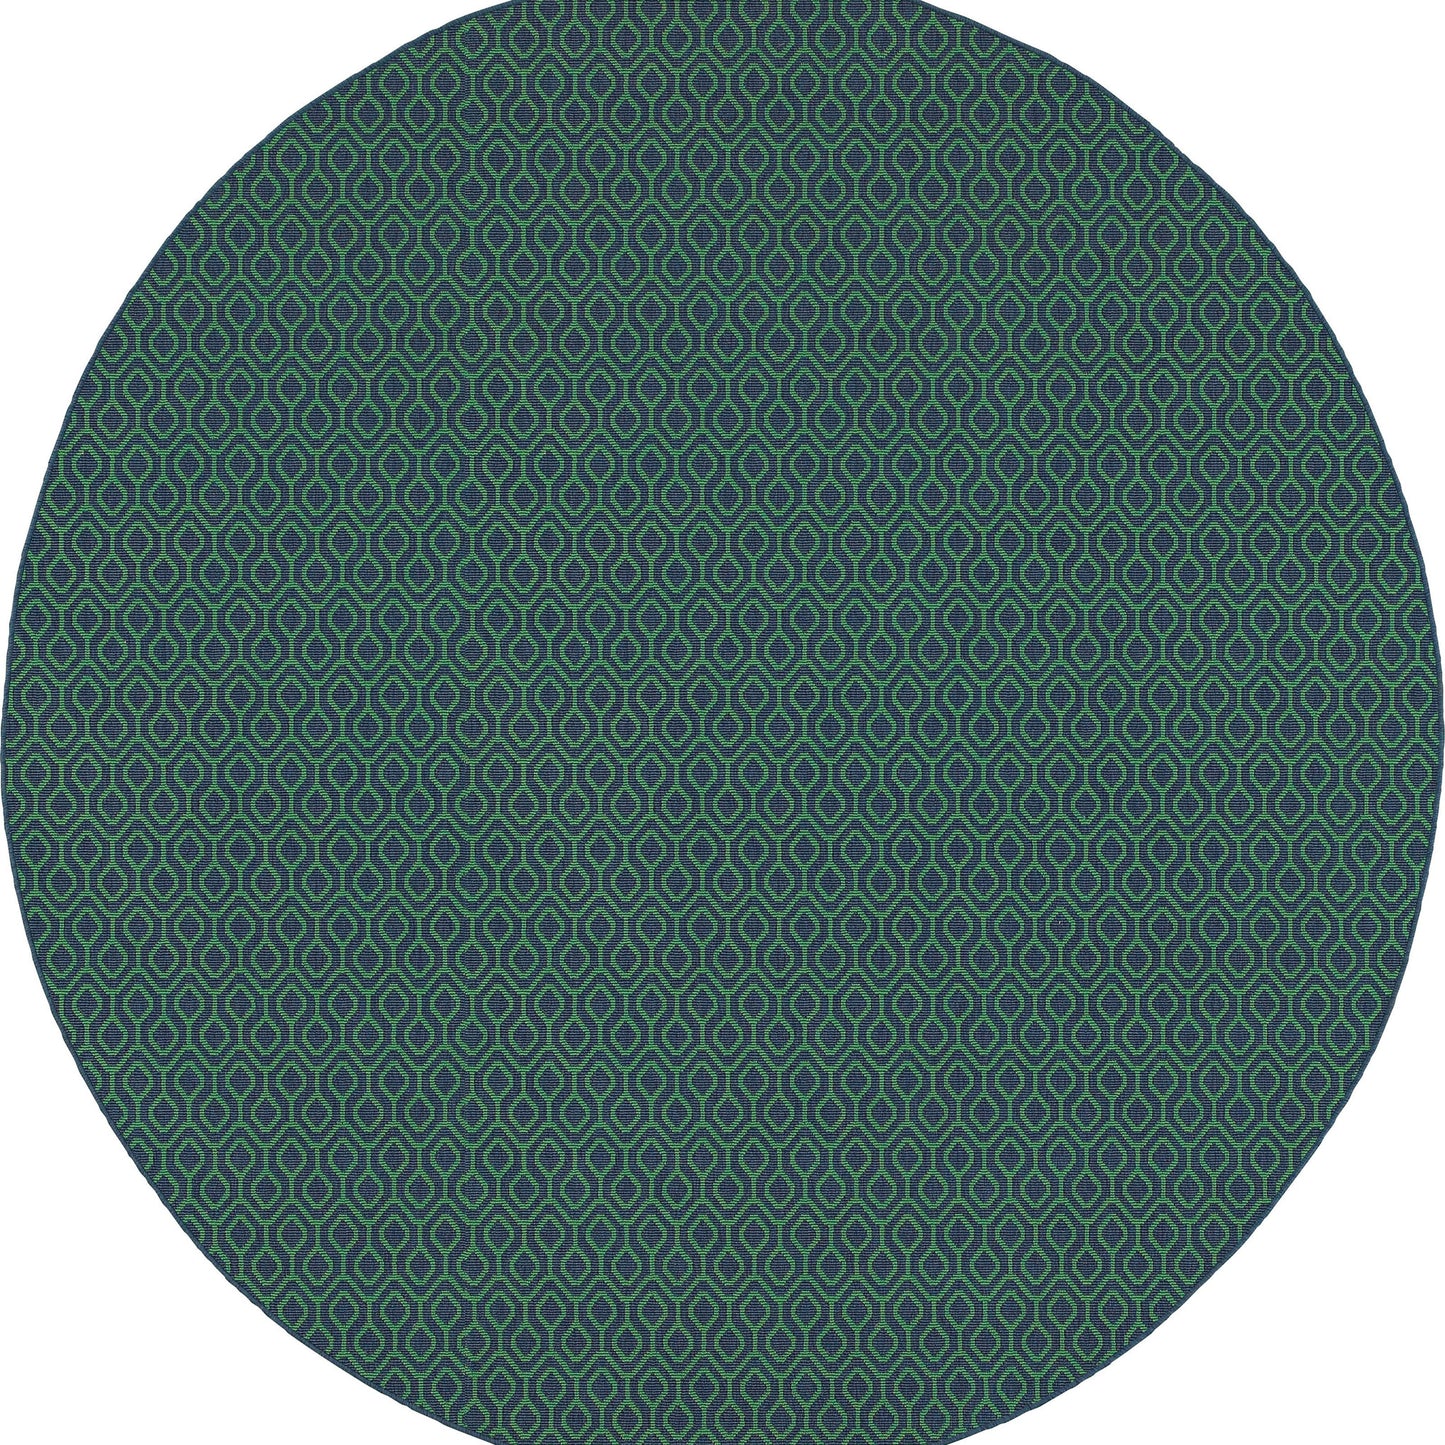 MERIDIAN 1634Q Navy, Green Rug - Oriental Weavers